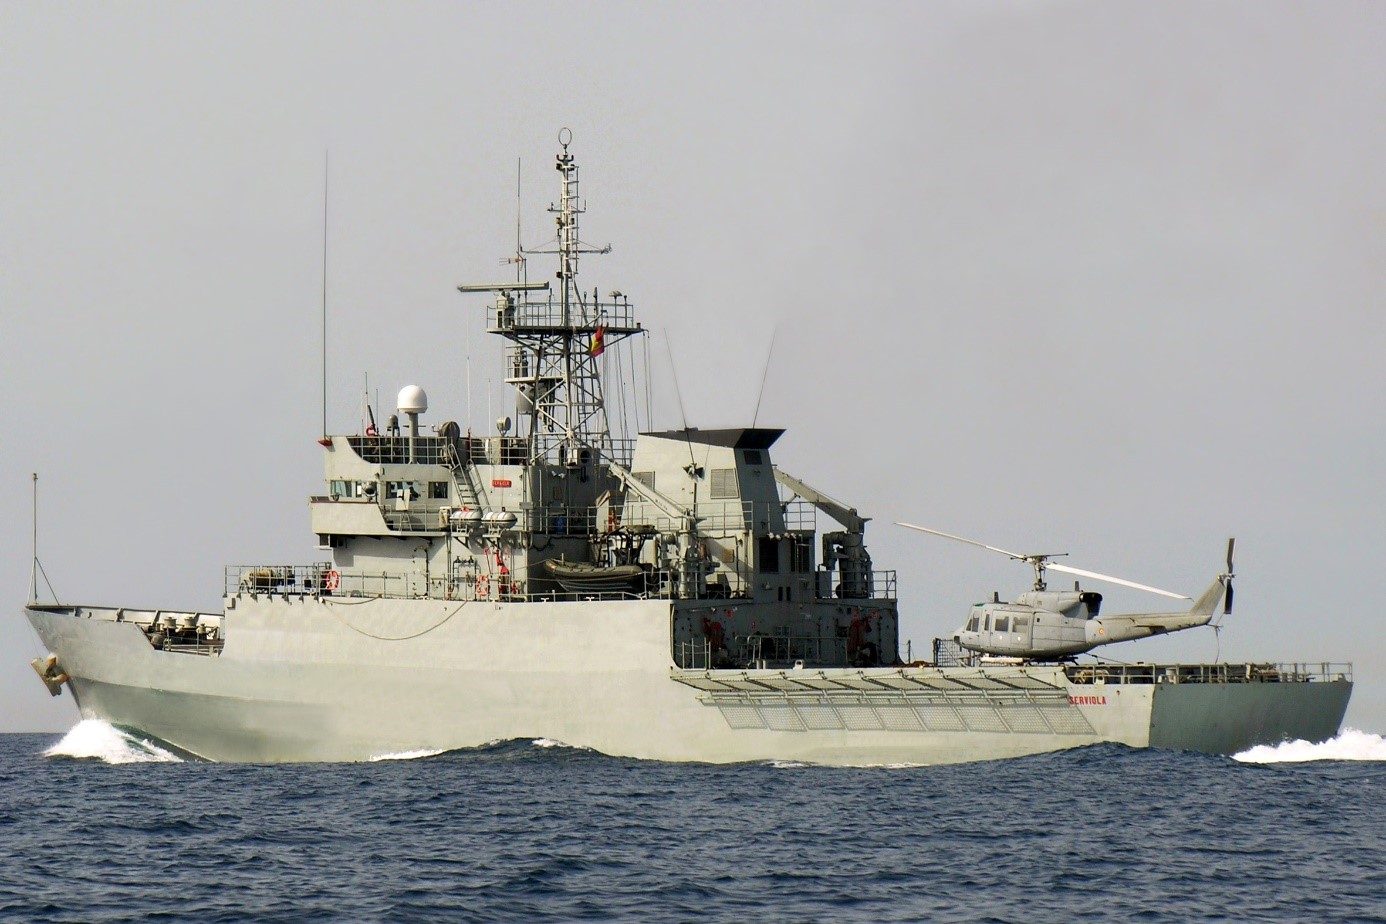 Patrol vessel 'Serviola' during navigation